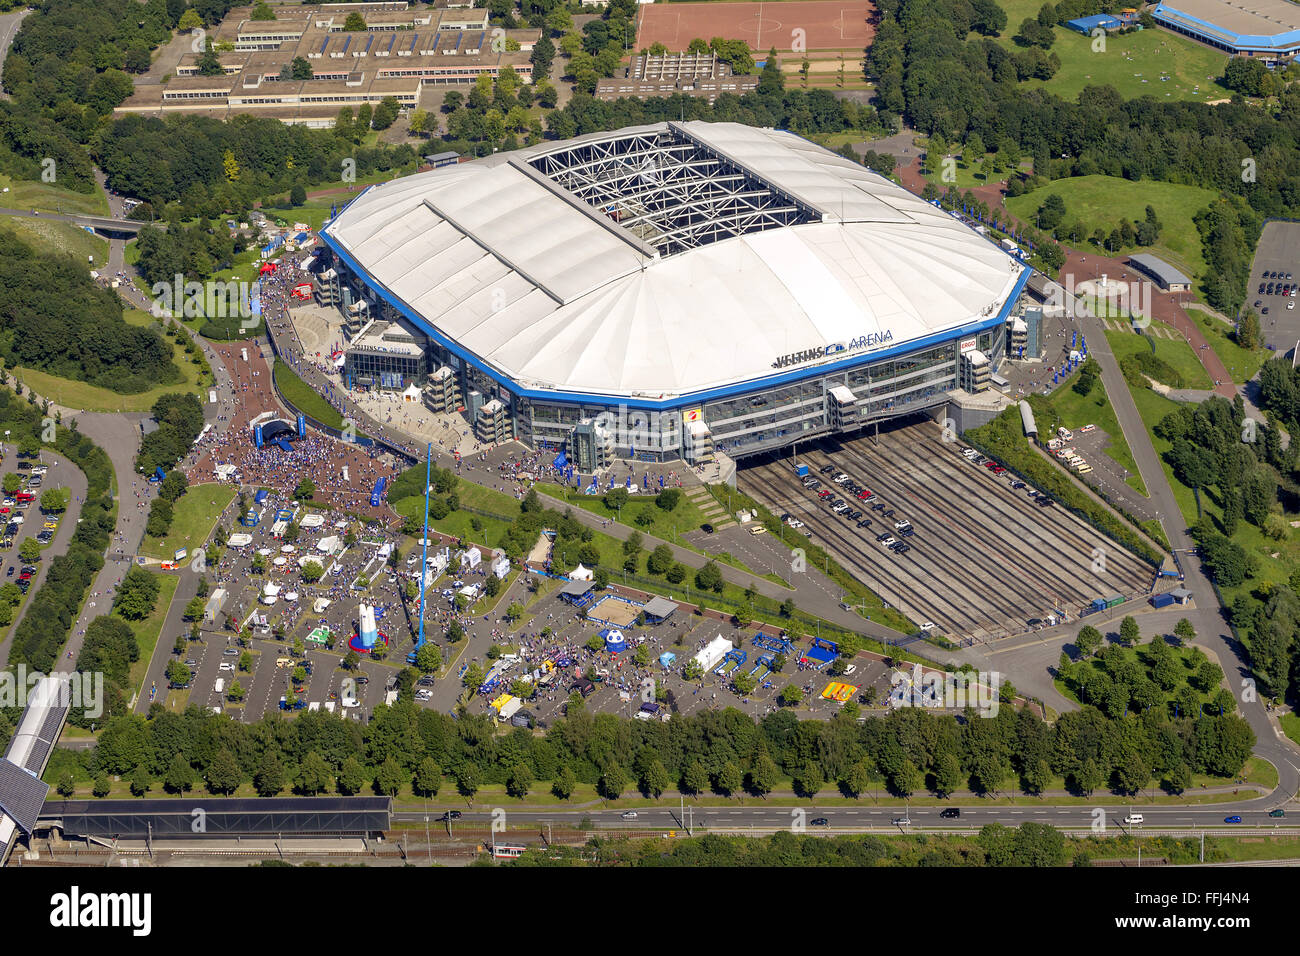 Aerial view, Veltins Arena, Veltins Arena, Schalke Arena, S04, national league, Schalke day at Schalke, Gelsenkirchen, Ruhr area Stock Photo